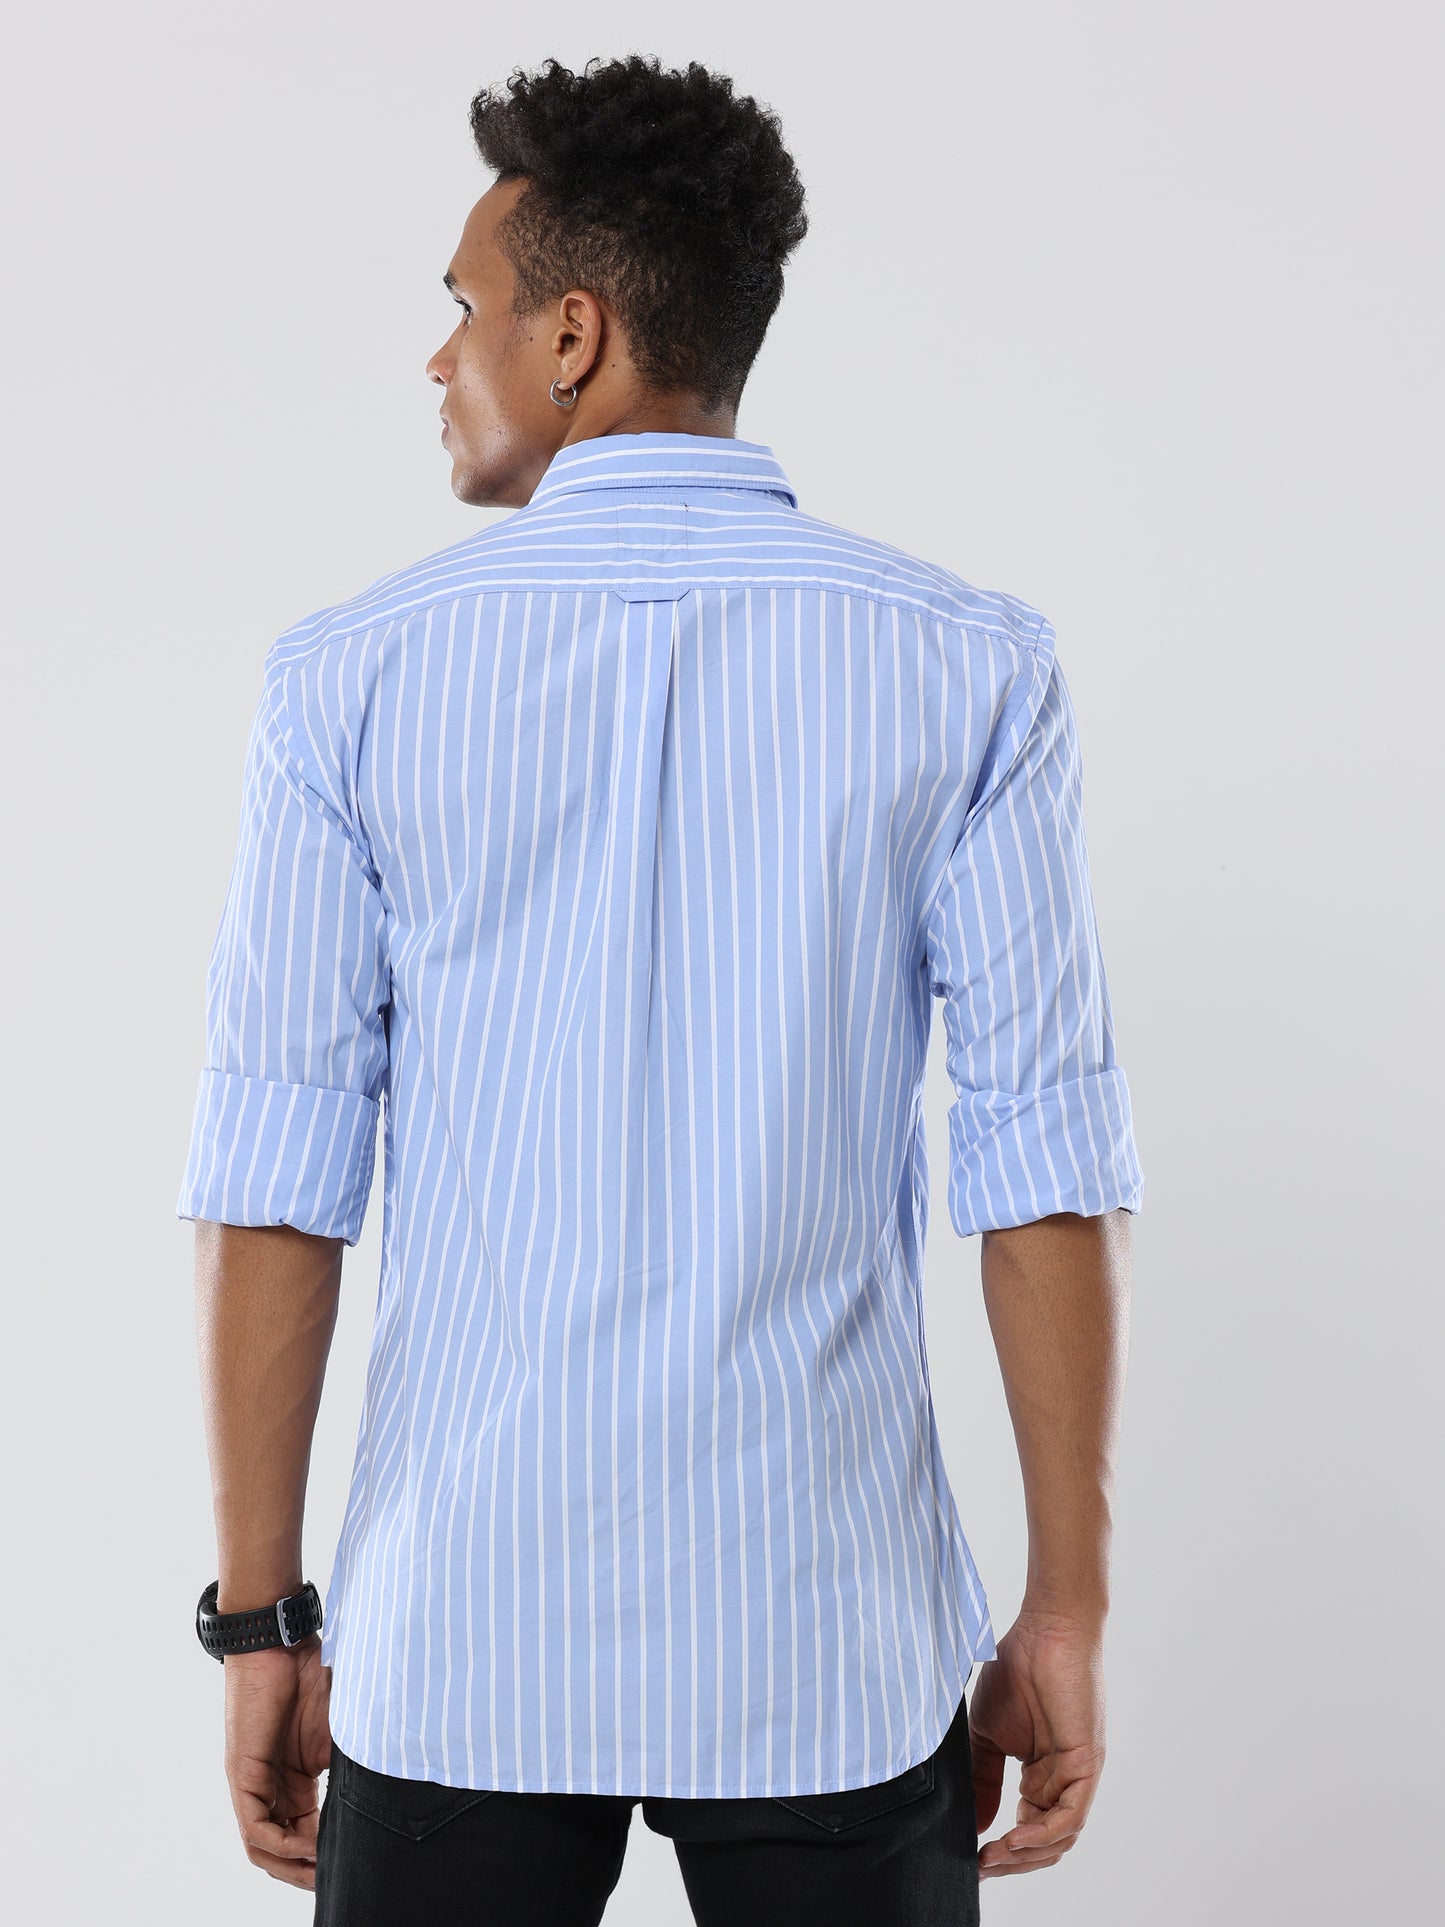 white- light blue striped Premium cotton Formal Shirt for men